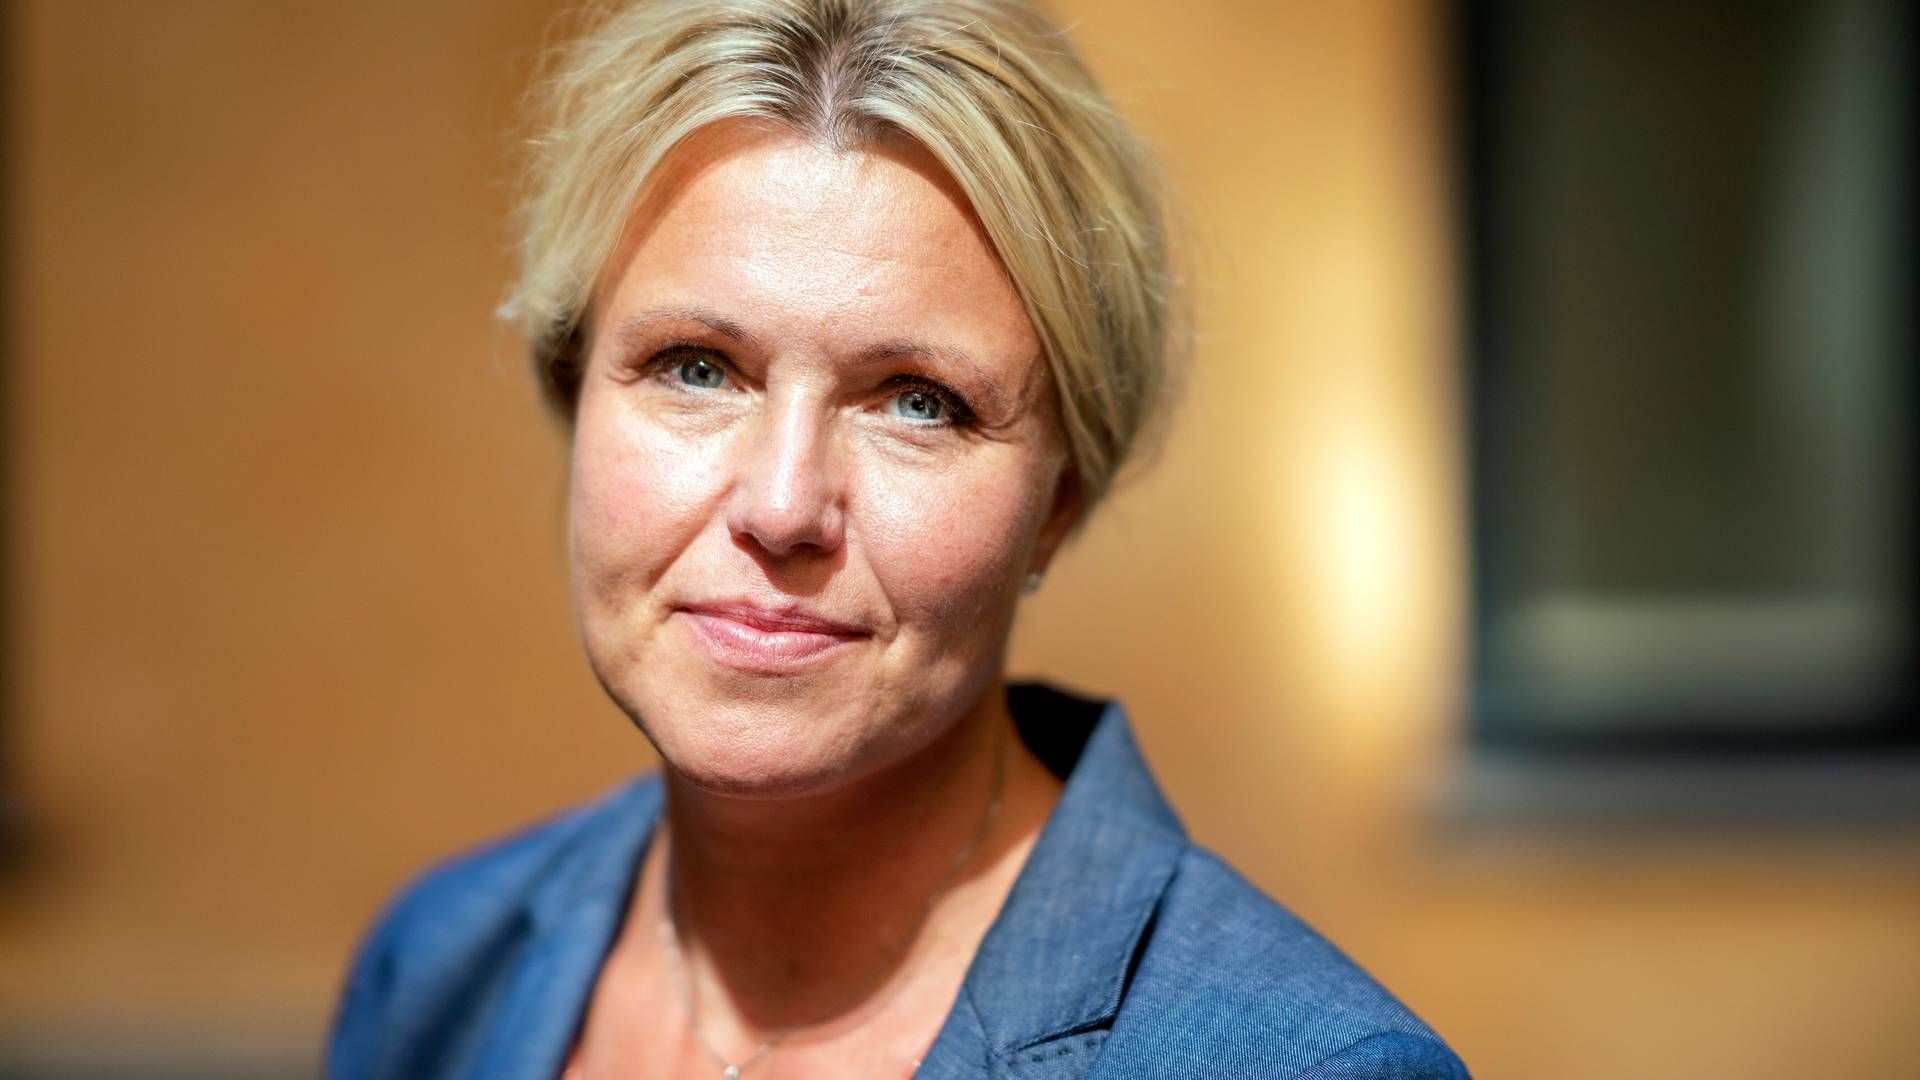 Adm. direktør for Merkur Andelskasse Charlotte Skovgaard er kritisk over for ESG-score. | Foto: Stine Bidstrup/Ritzau Scanpix